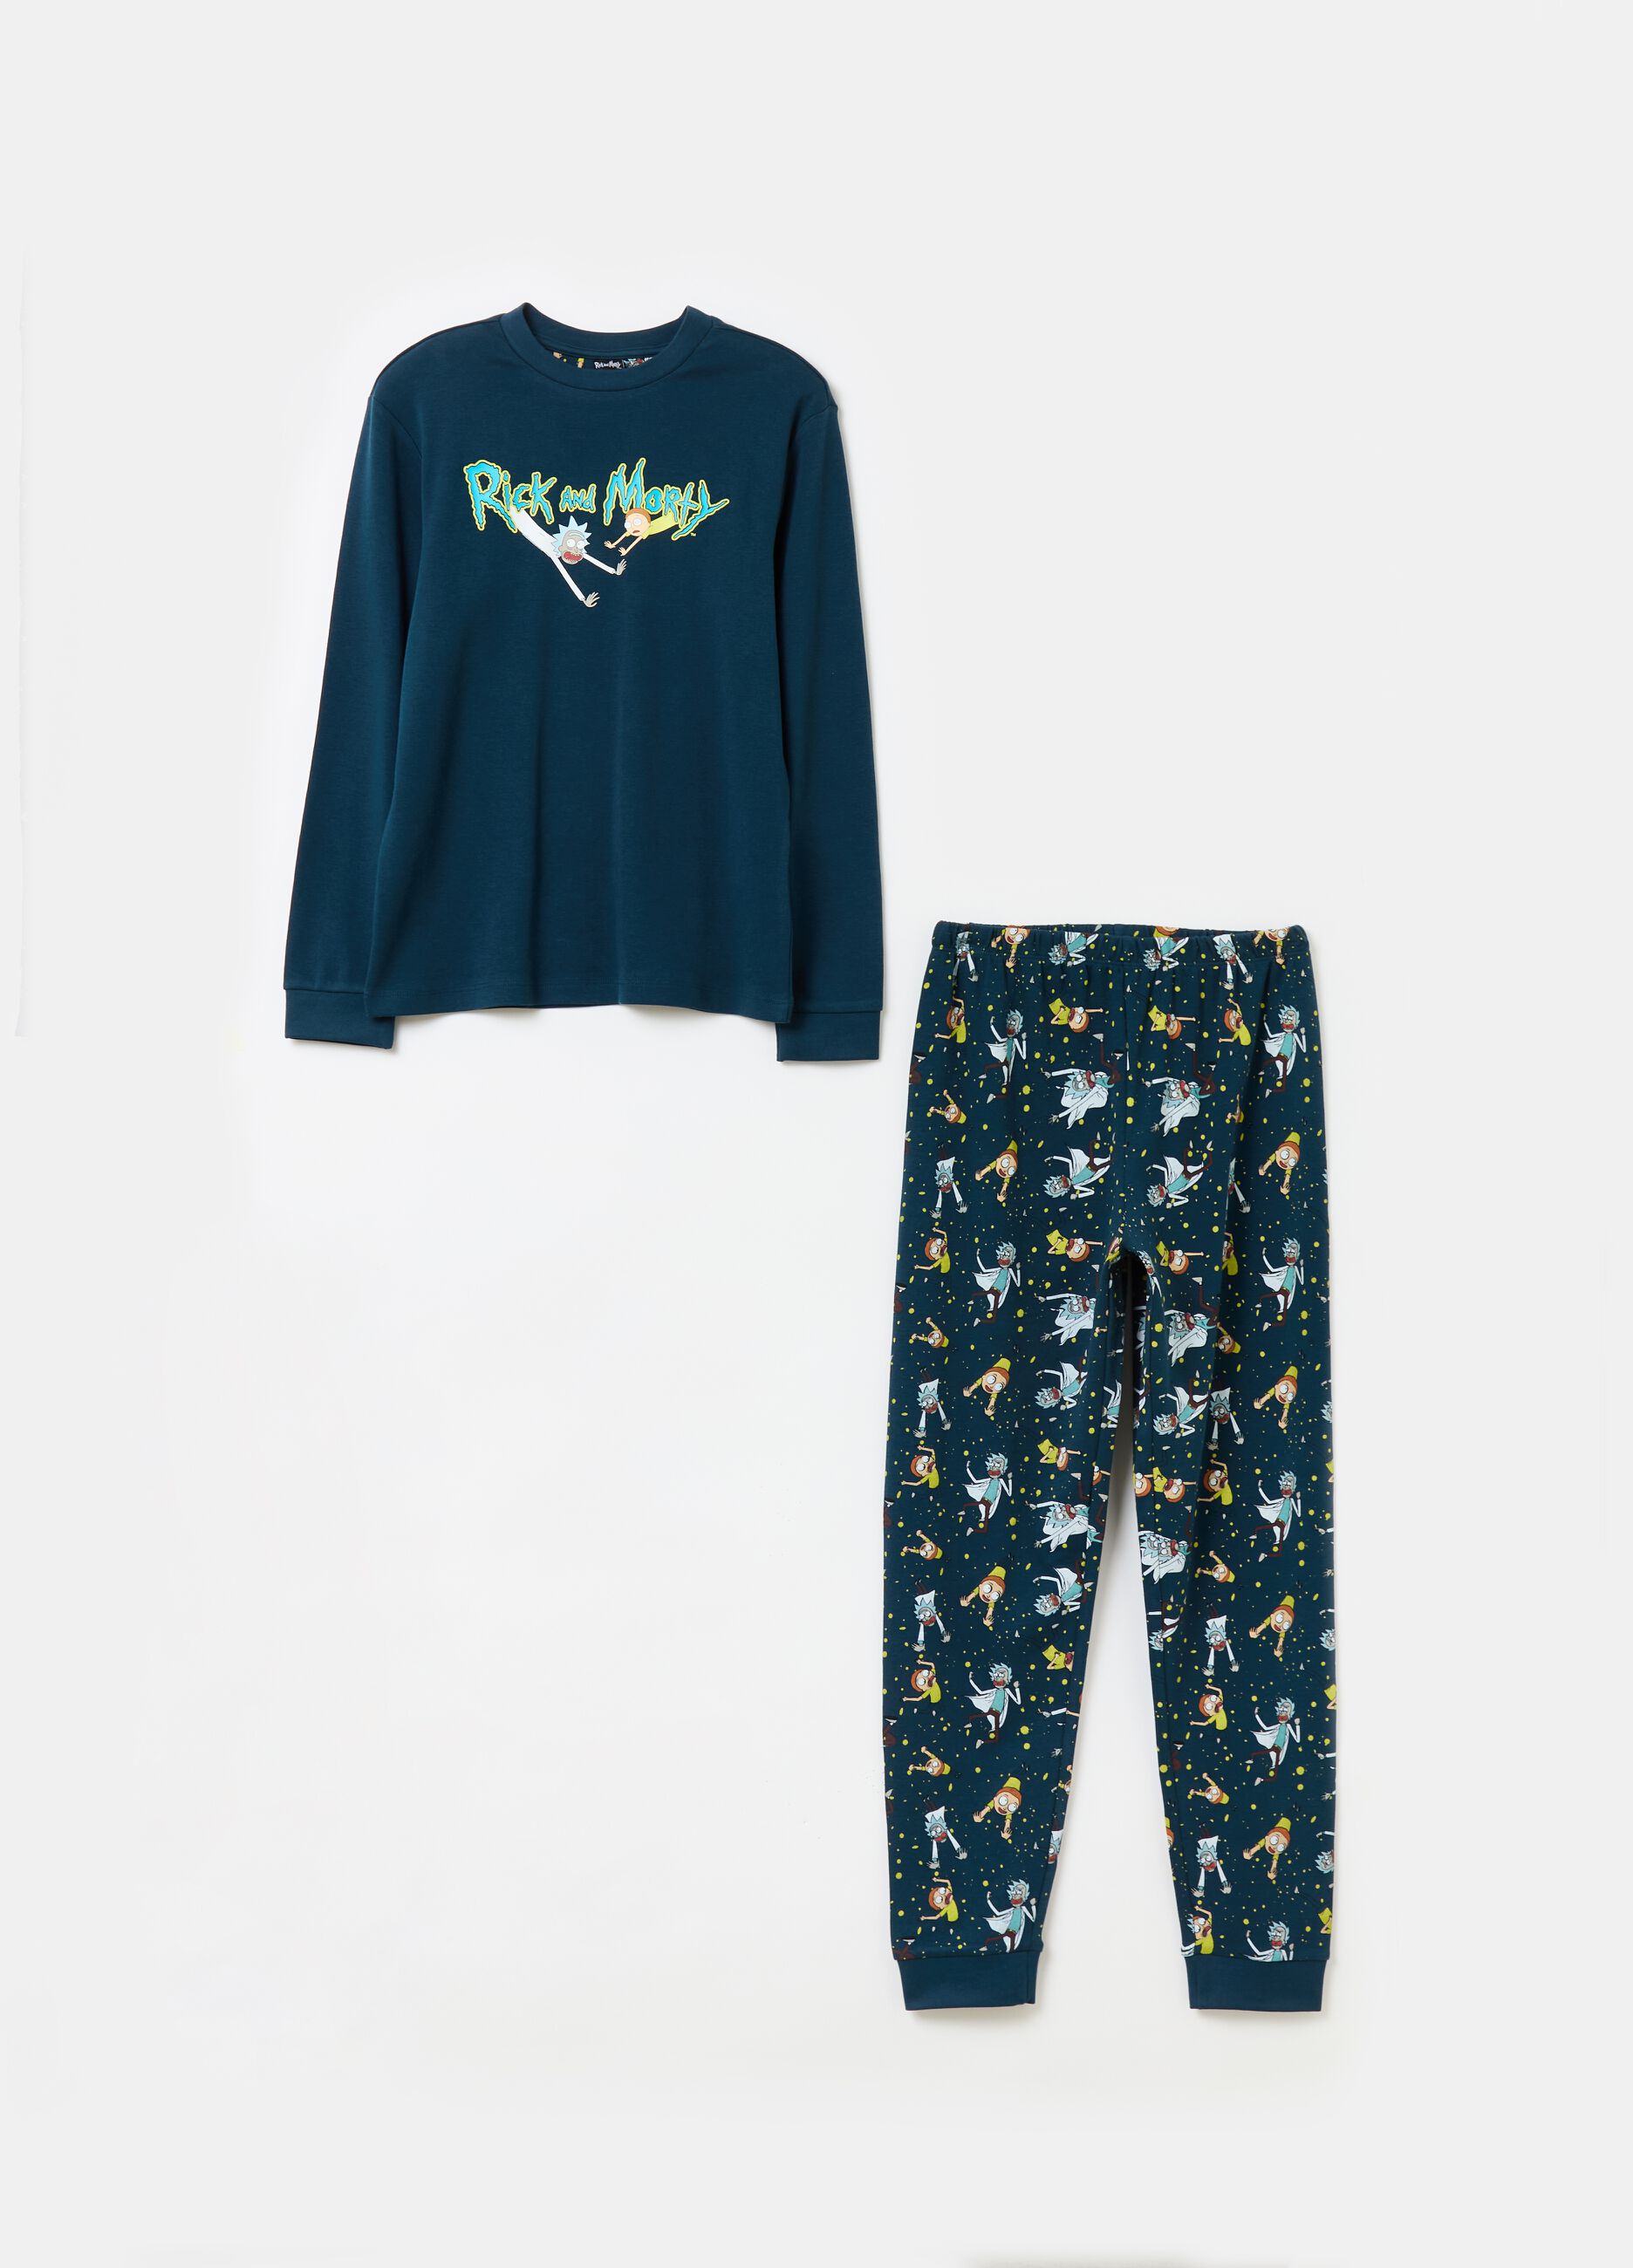 Long pyjamas with Rick and Morty print